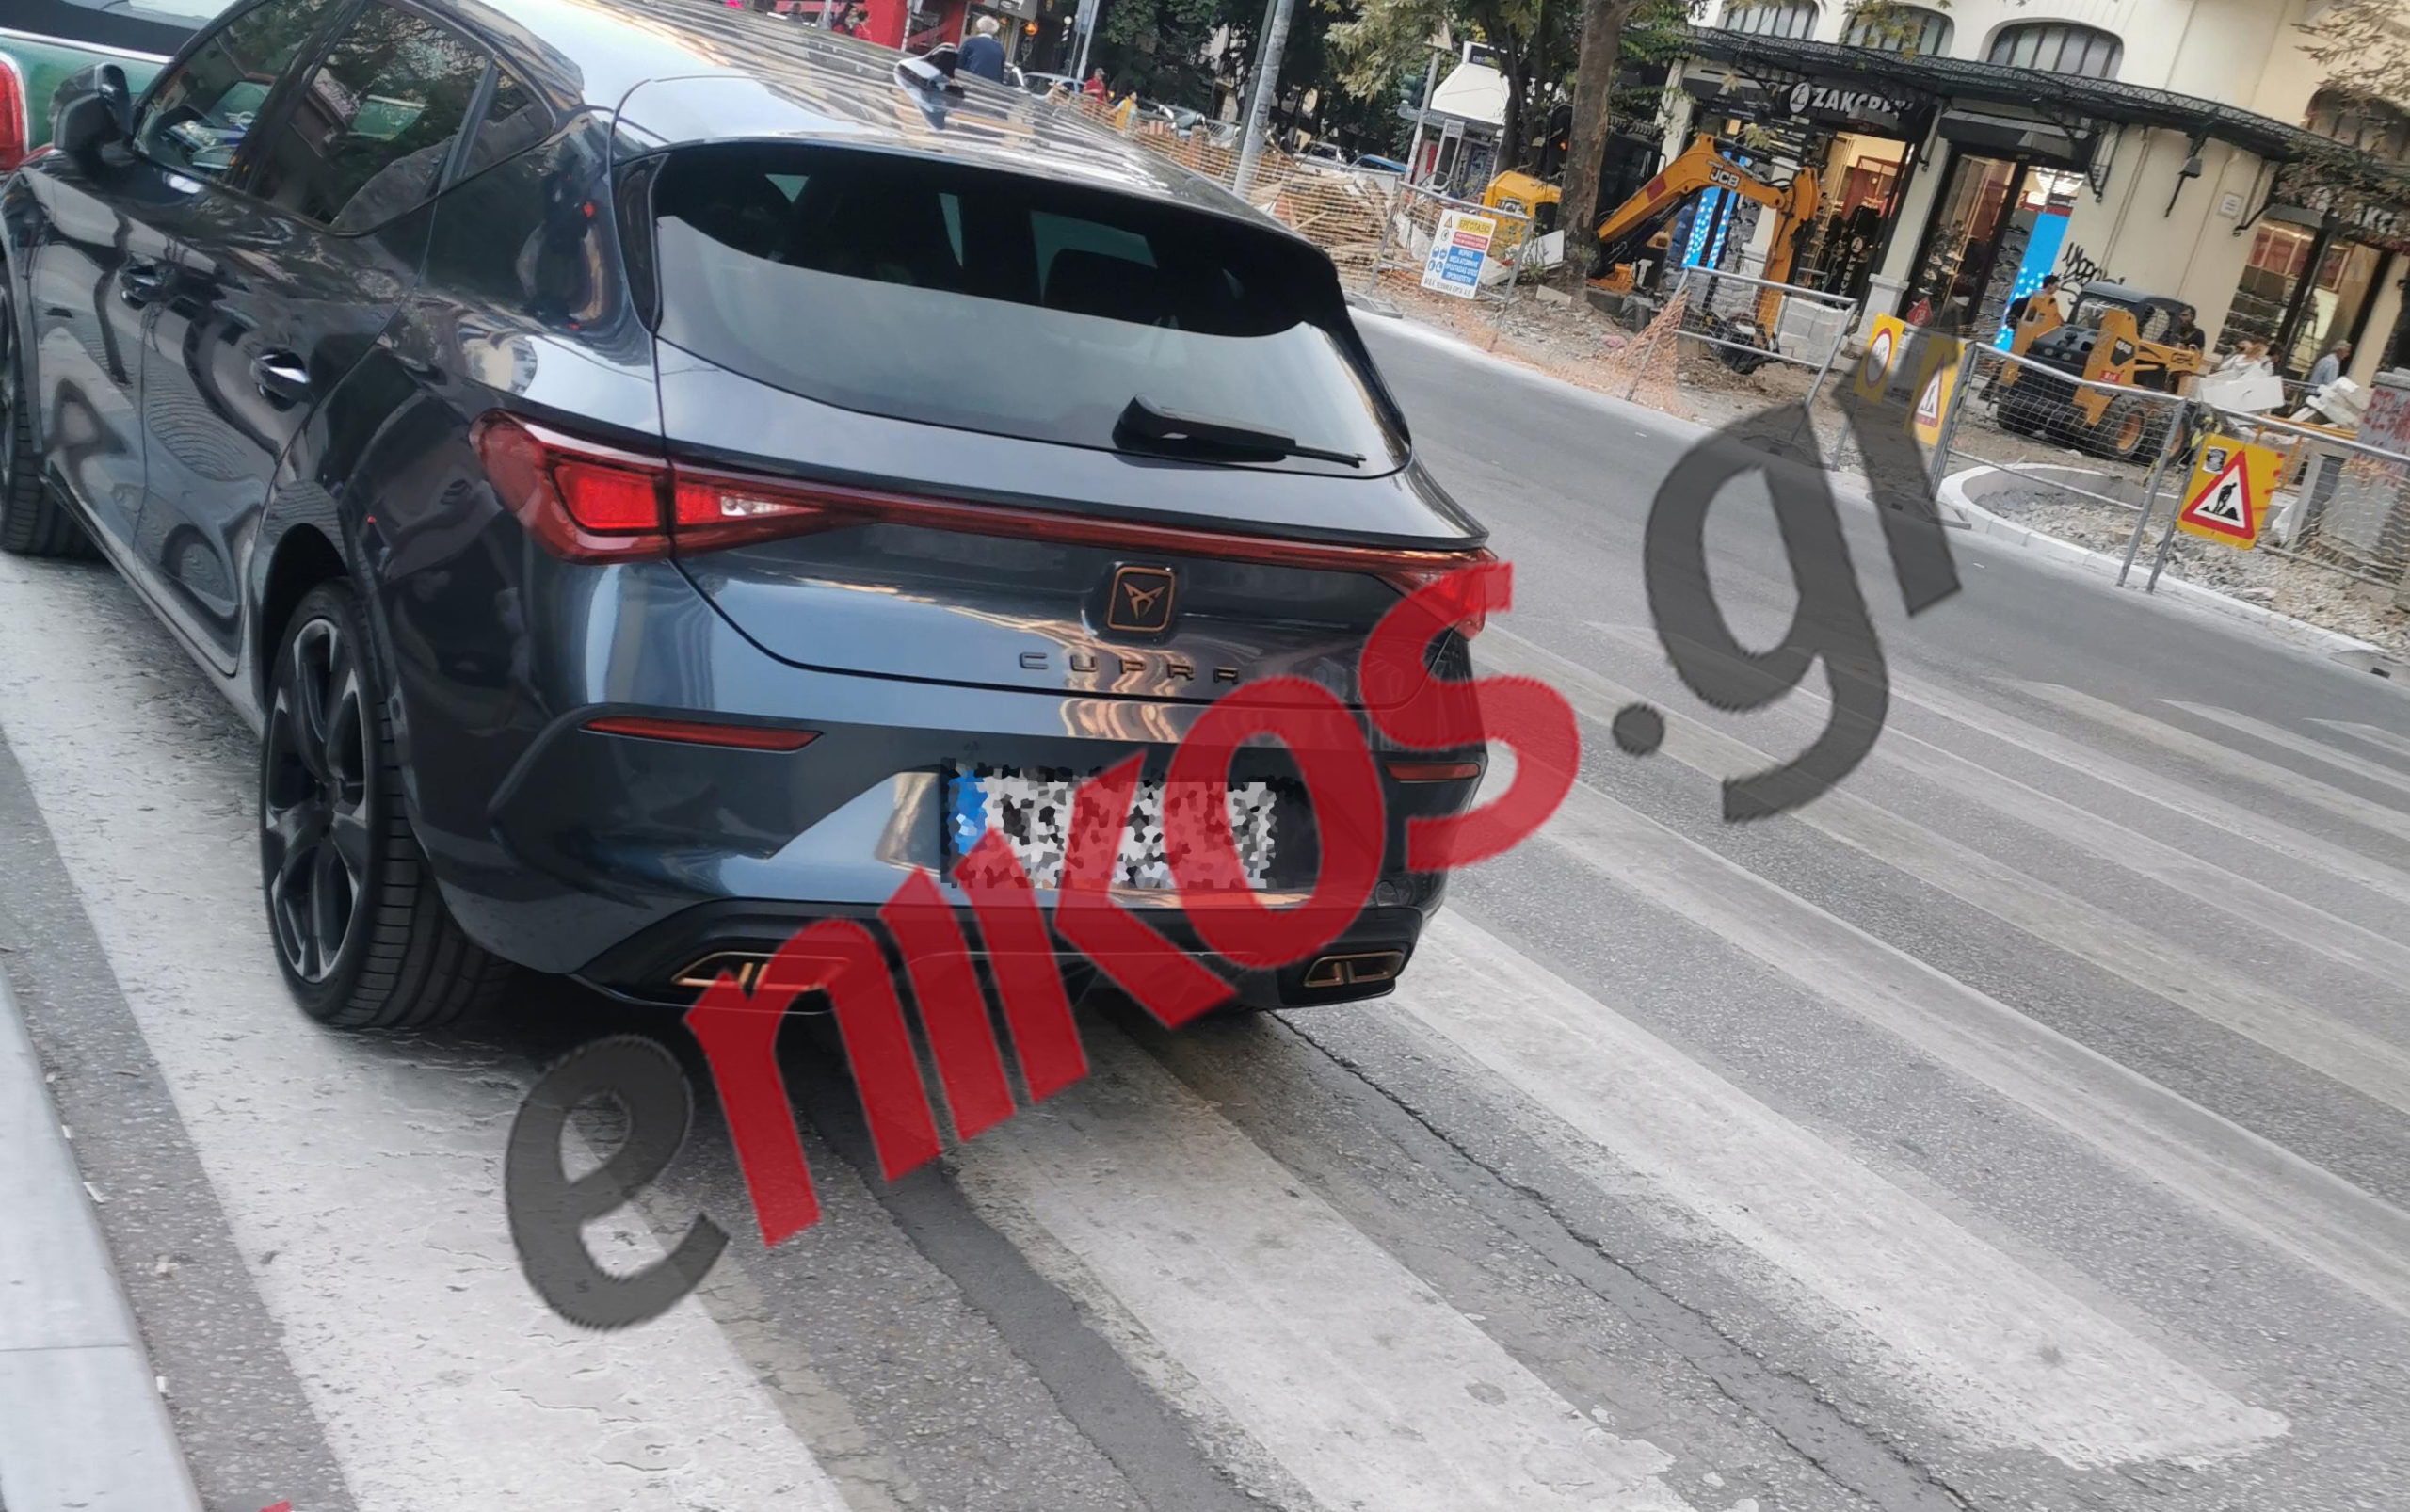 Παράνομα παρκαρίσματα στην Θεσσαλονίκη – Άφησαν τα οχήματά τους πάνω σε διαβάσεις πεζών – ΦΩΤΟ αναγνώστη